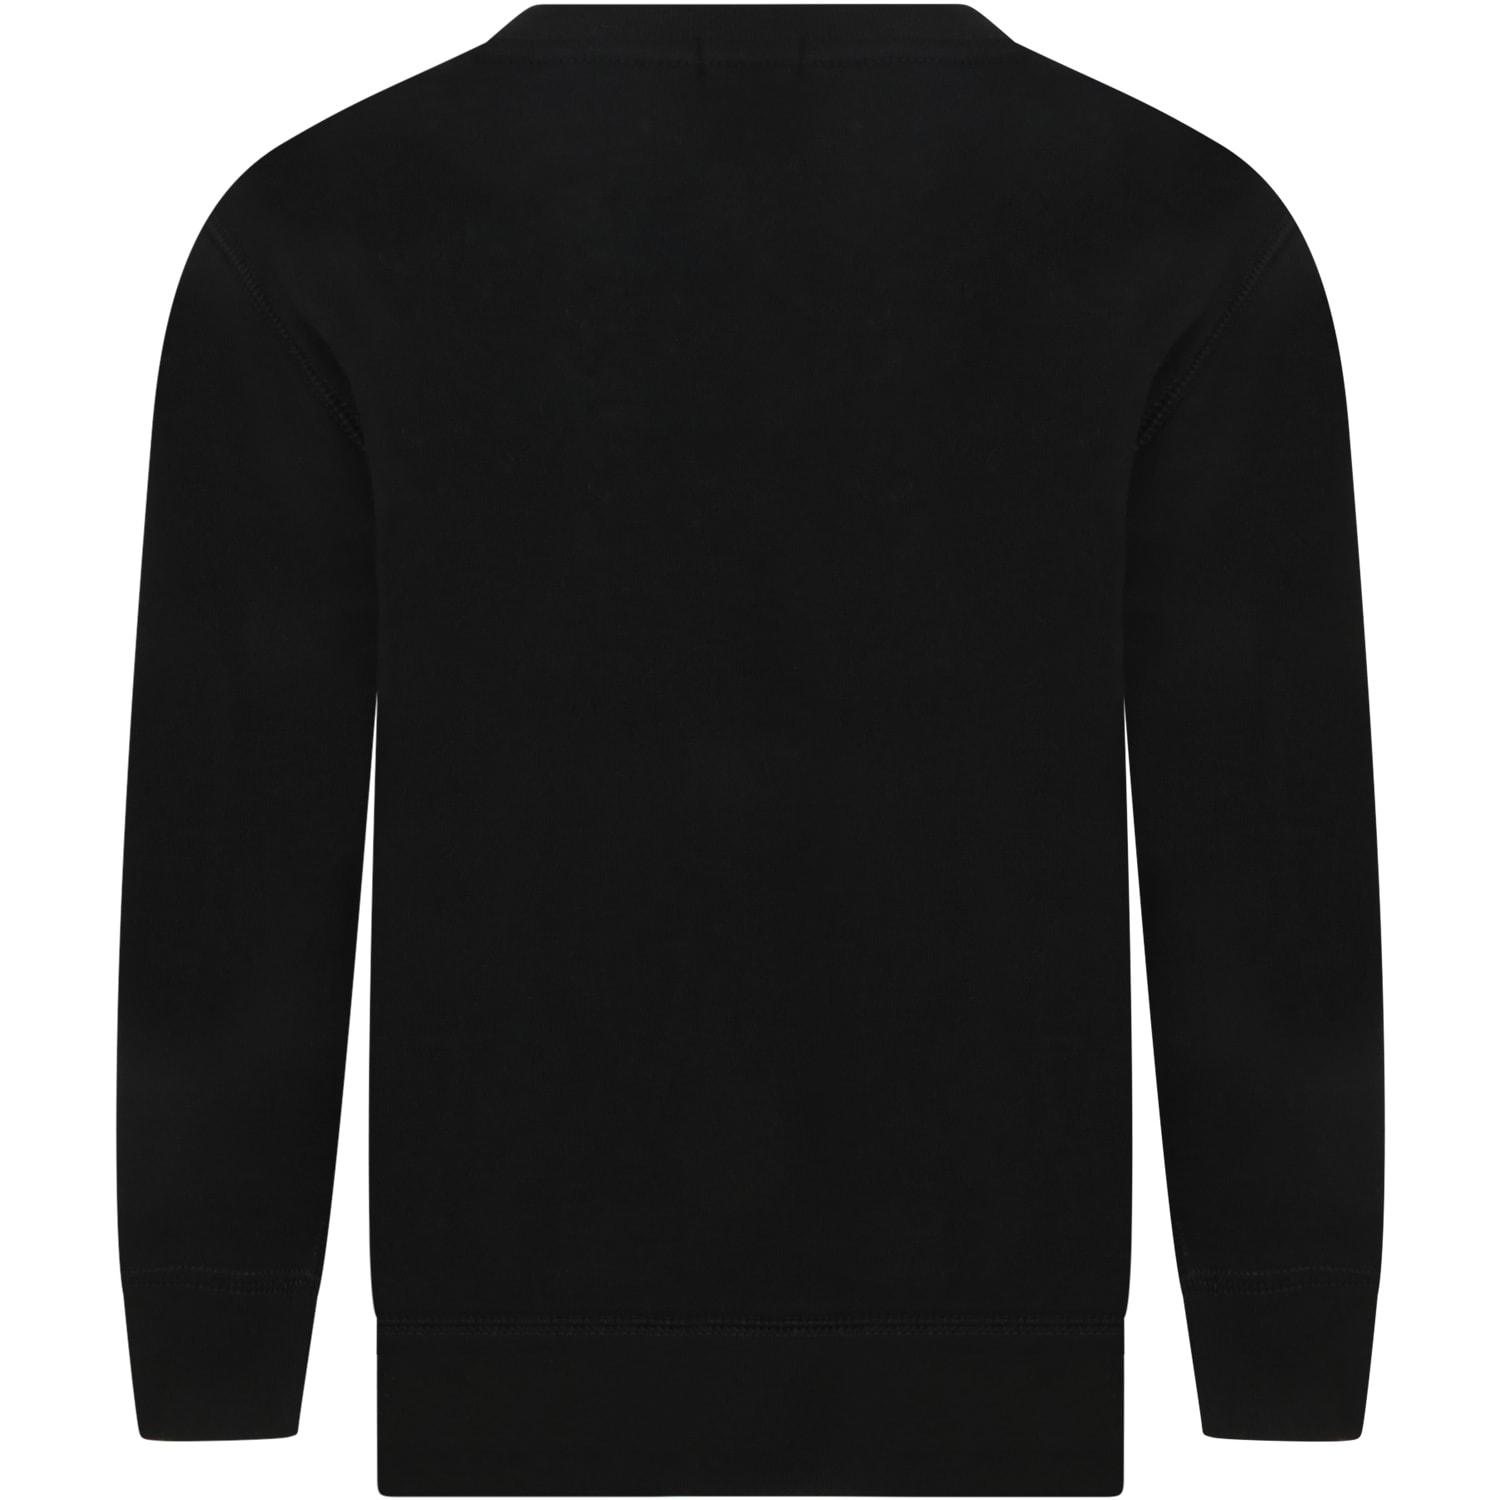 Shop Ralph Lauren Black Sweatshirt For Boy With Pony Logo